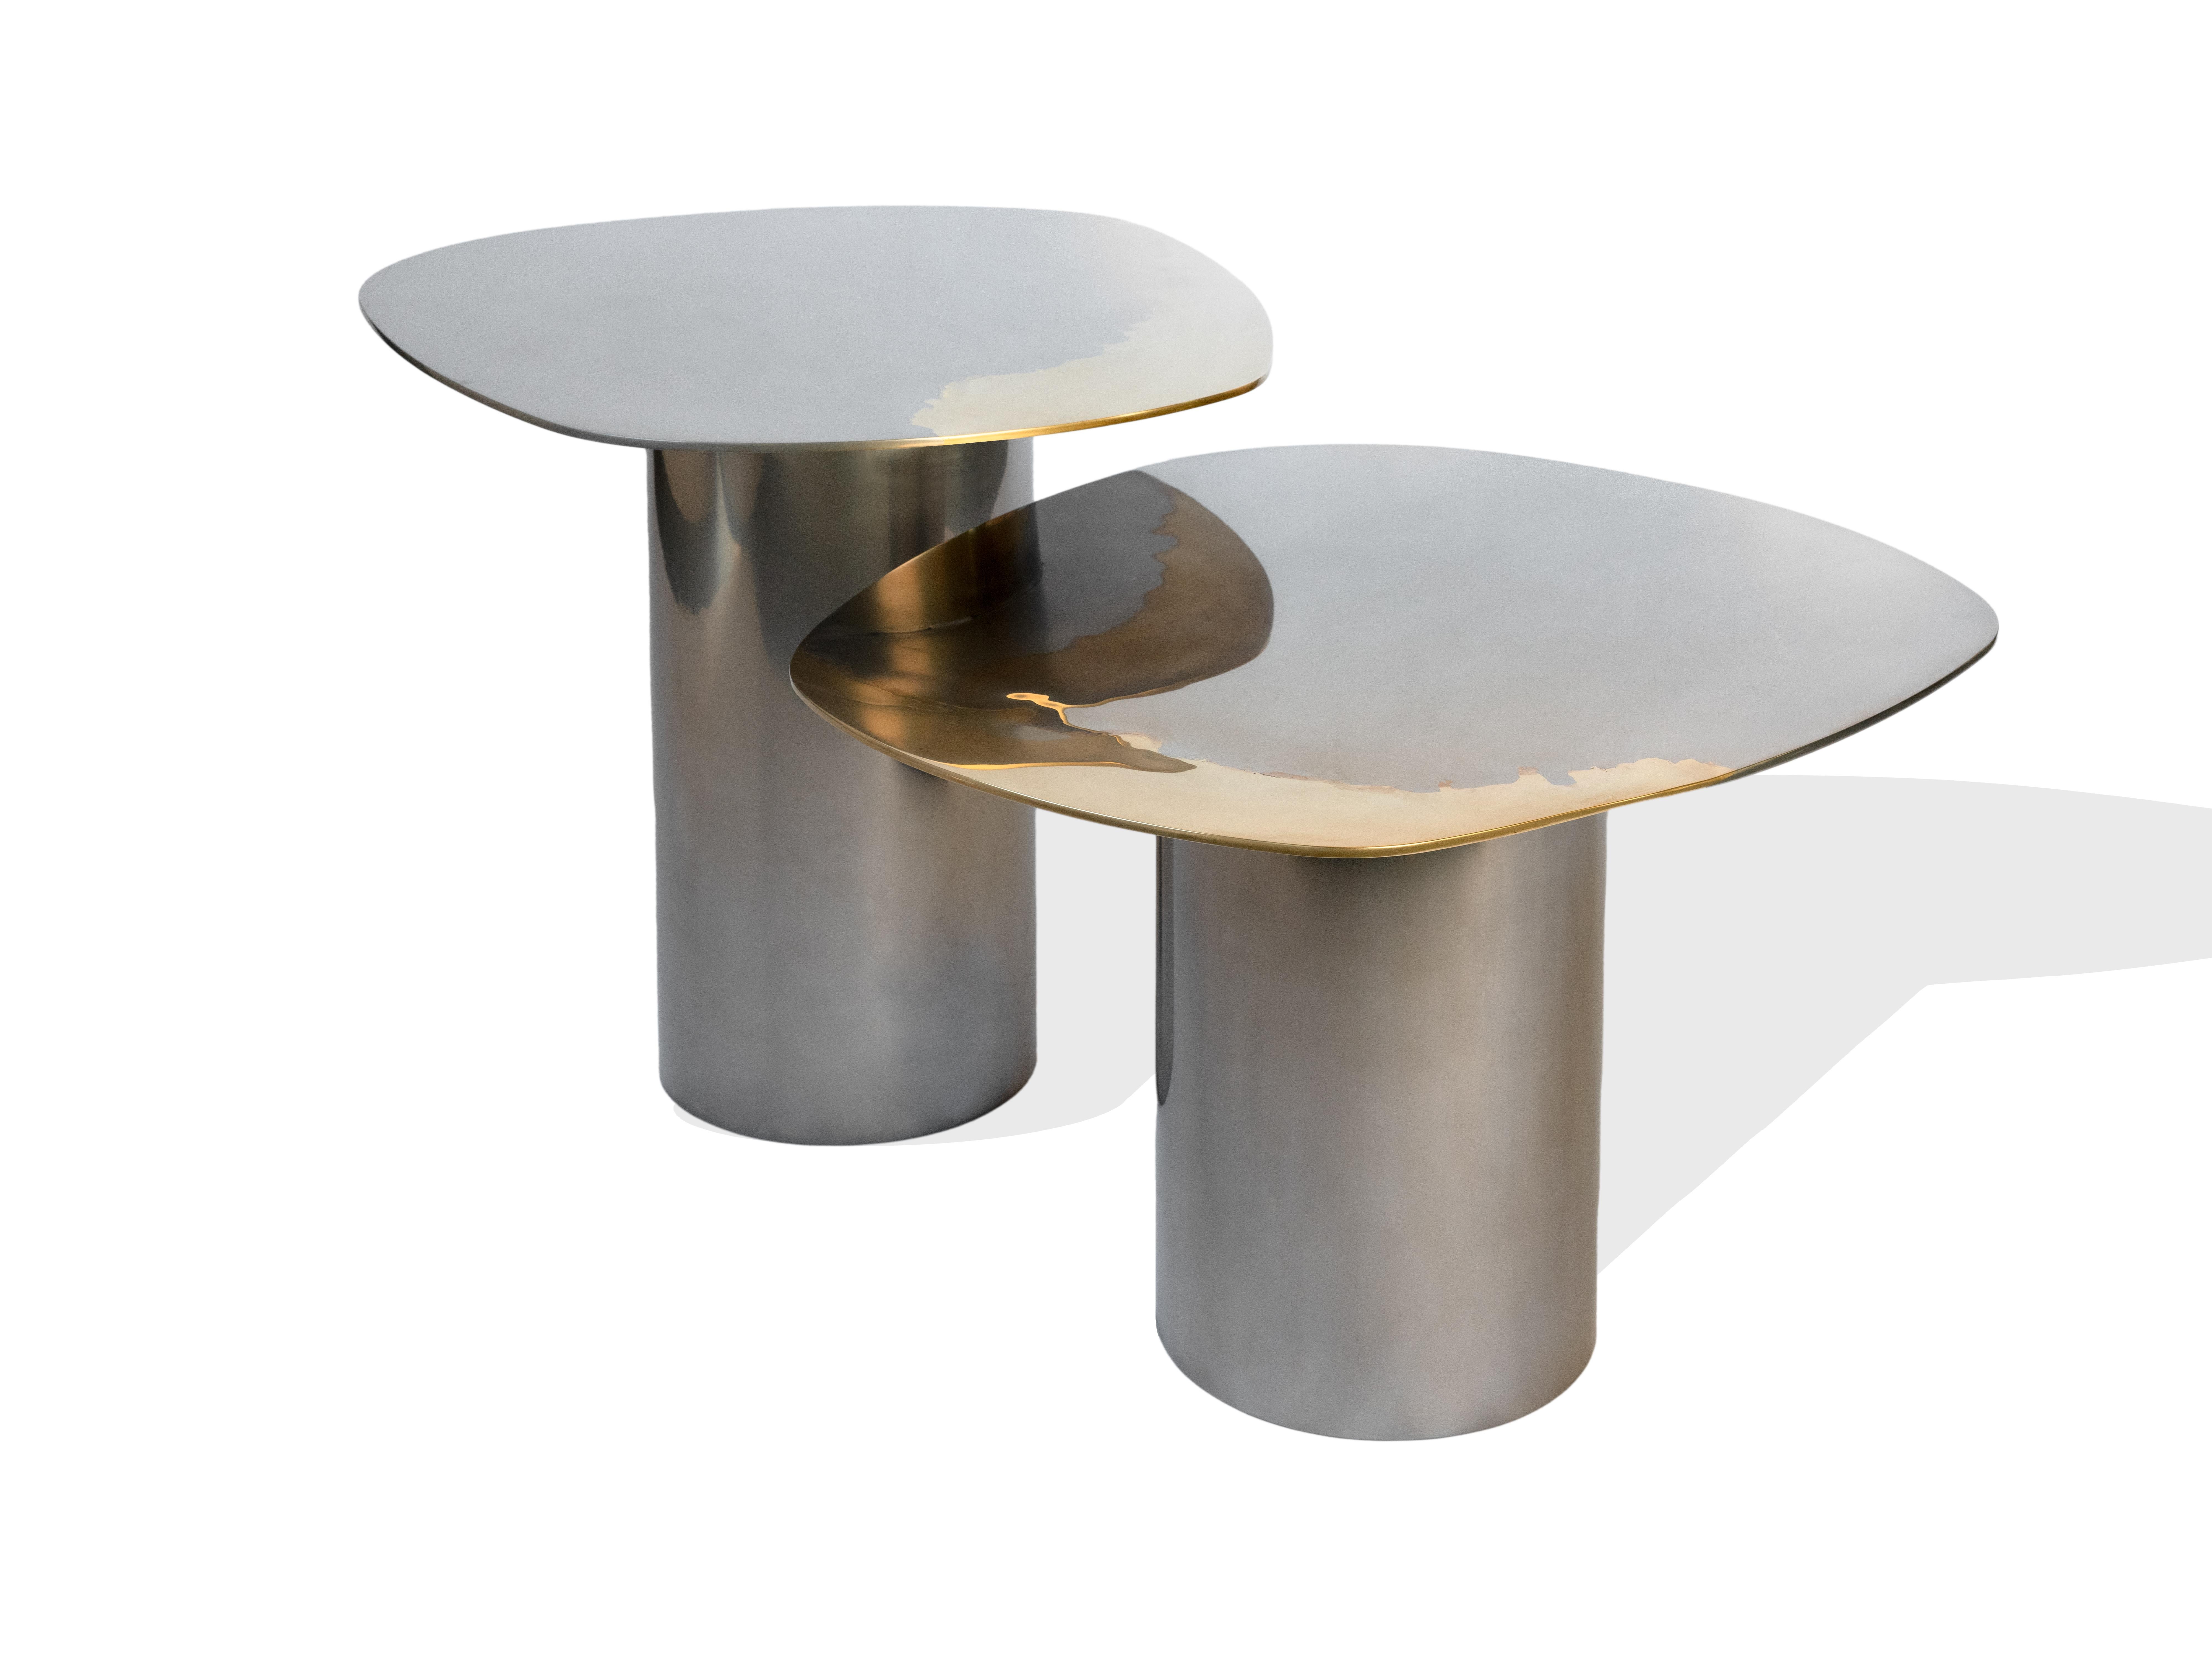 Ein Set von Custom-Nesting-Tischen als Teil der Transition-Kollektion mit einzigartigen, künstlerischen, spiegelpolierten Tischplatten, die aus Messing und Edelstahl auf Rohrfüßen gefertigt sind. 

Studio Warm hat ein unverwechselbares,